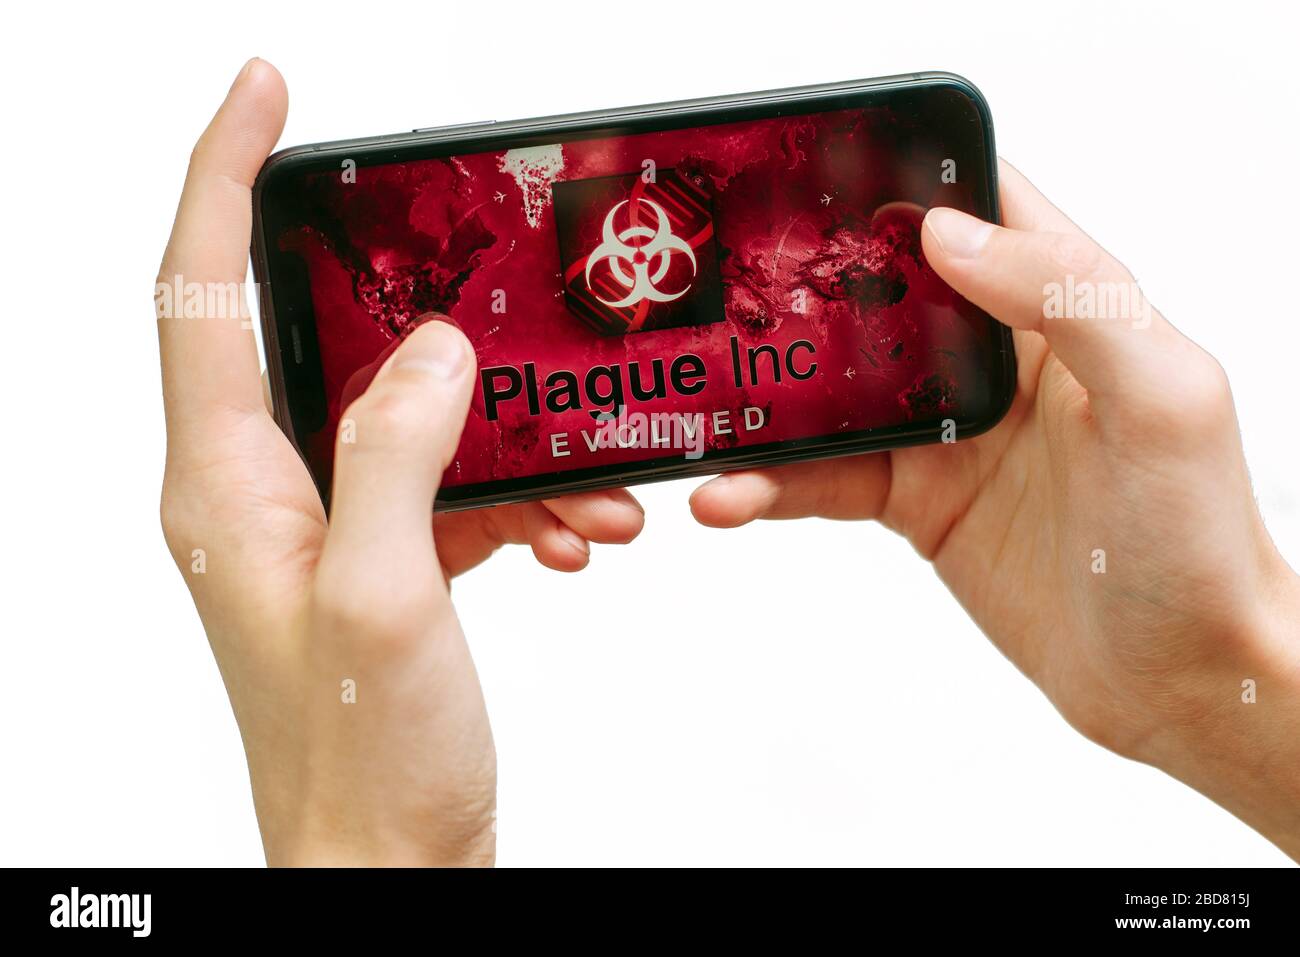 Samara Russie - 04.05.2020: Un jeune homme joue à Plague Inc a évolué sur iPhone 11. Mains isolées d'un homme tenant un smartphone avec un jeu. Banque D'Images